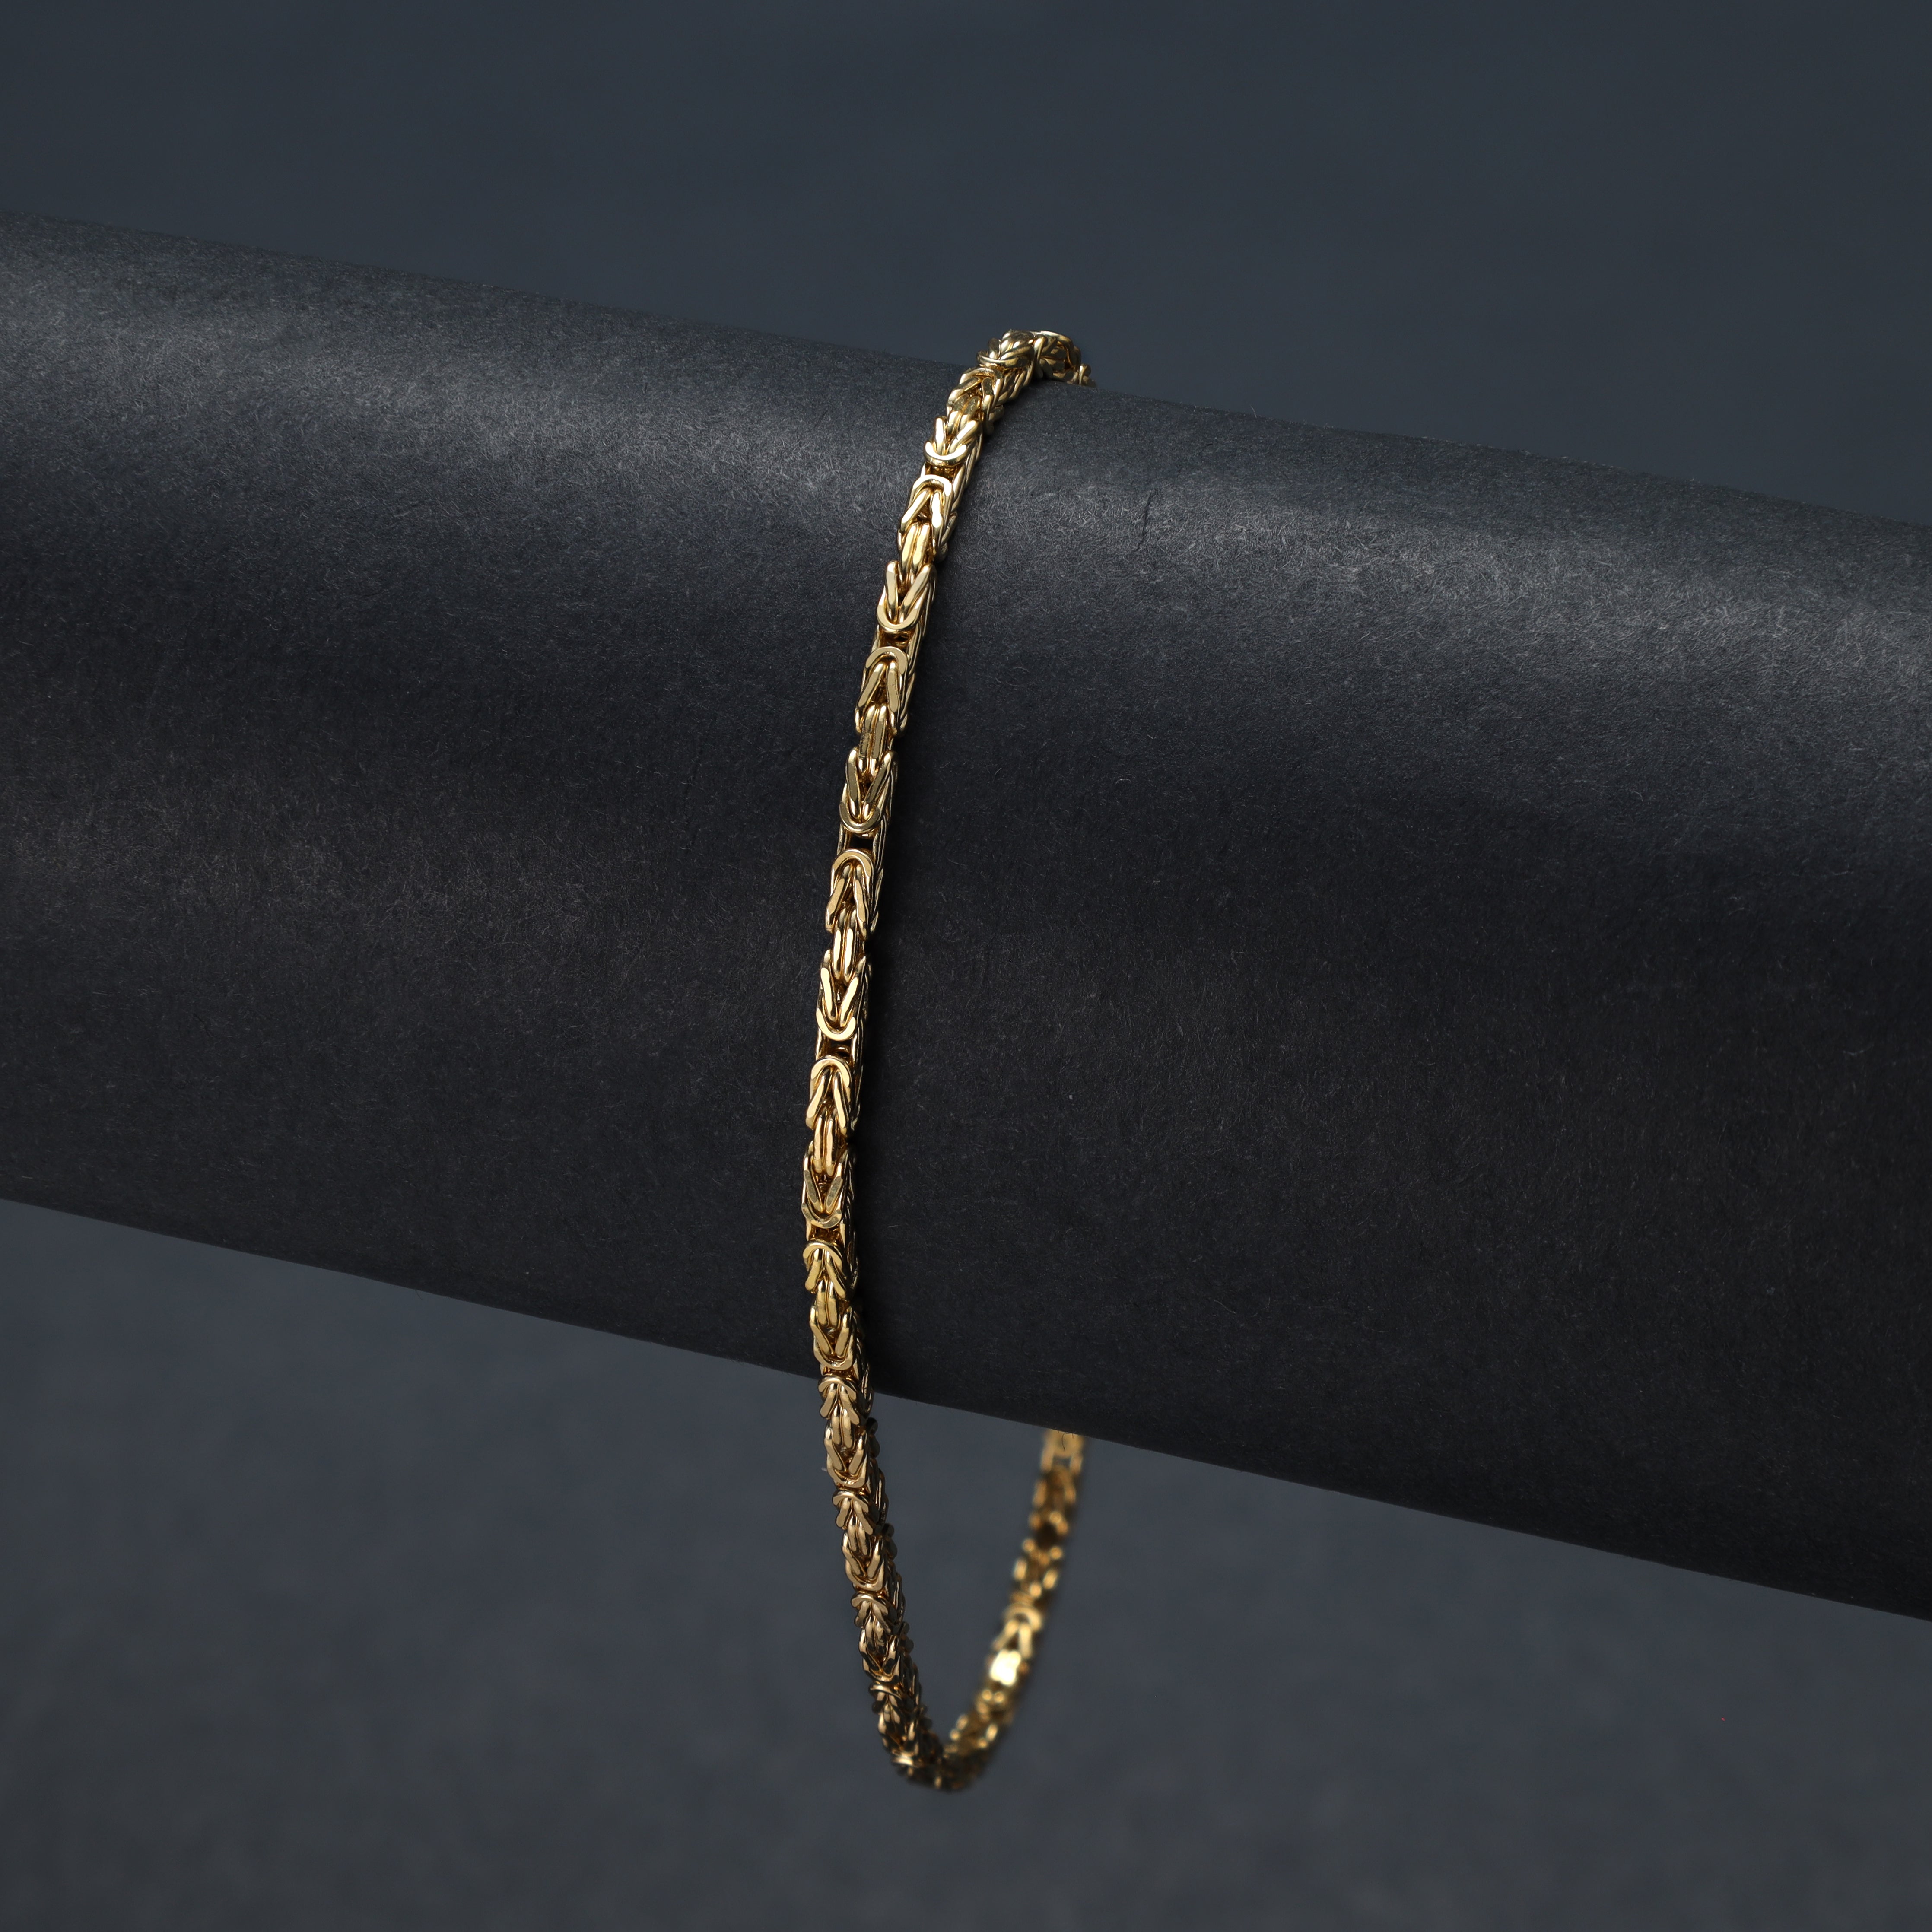 18K 750 Gold Königskette Armband 1,9mm breit 19cm lang - Taipan Schmuck